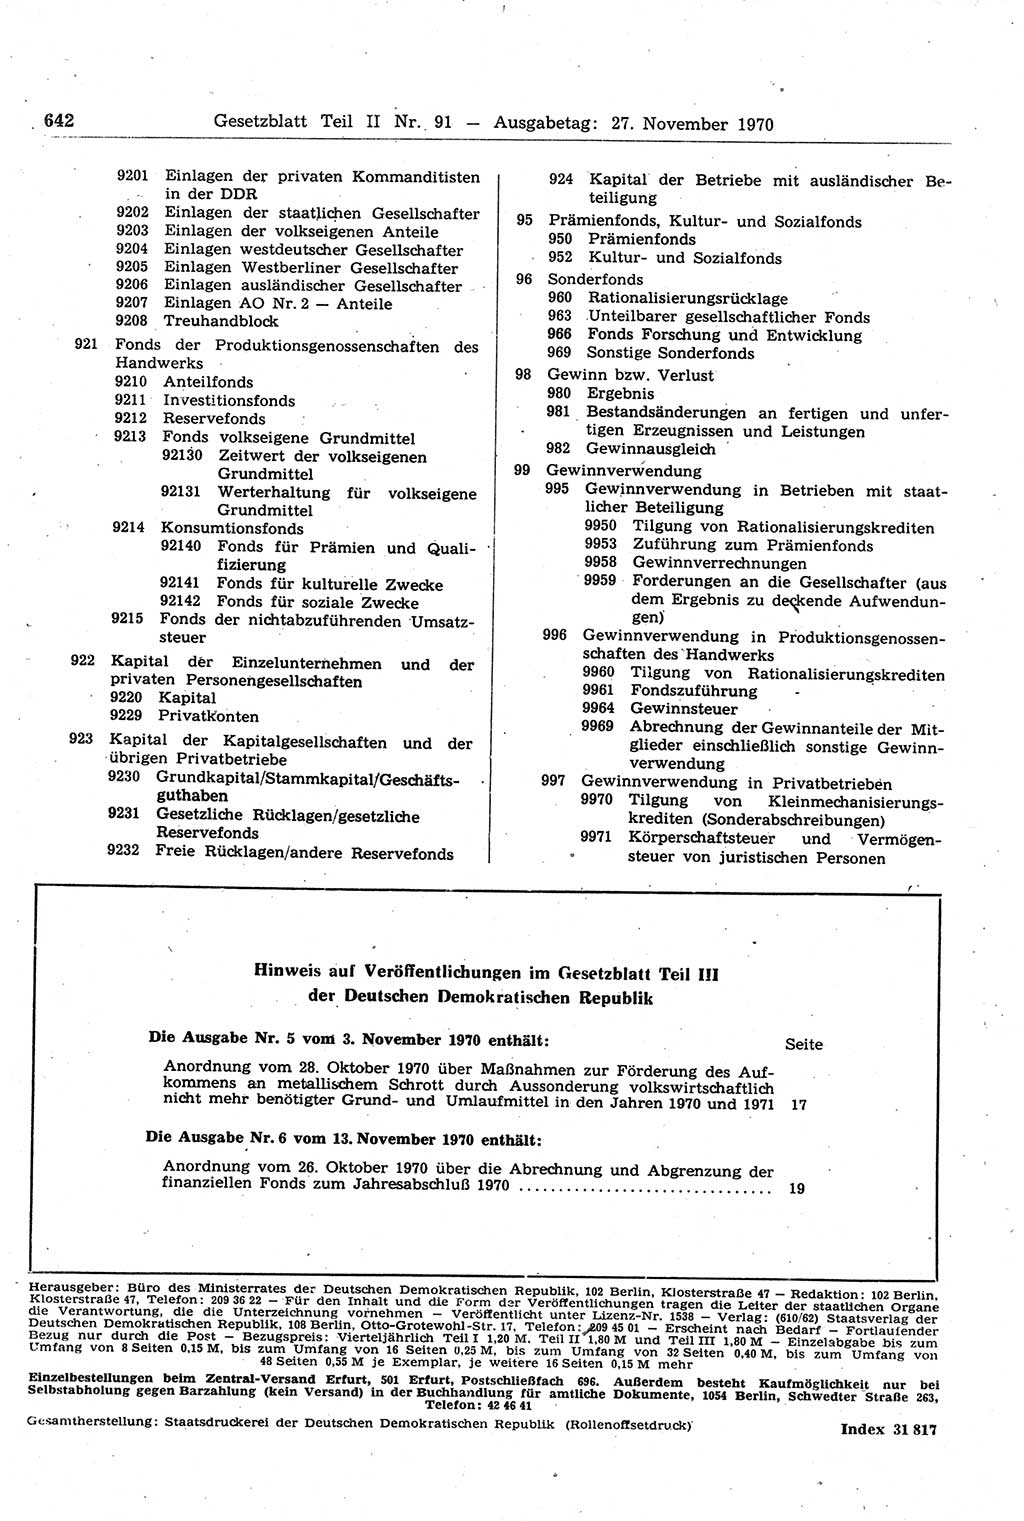 Gesetzblatt (GBl.) der Deutschen Demokratischen Republik (DDR) Teil ⅠⅠ 1970, Seite 642 (GBl. DDR ⅠⅠ 1970, S. 642)